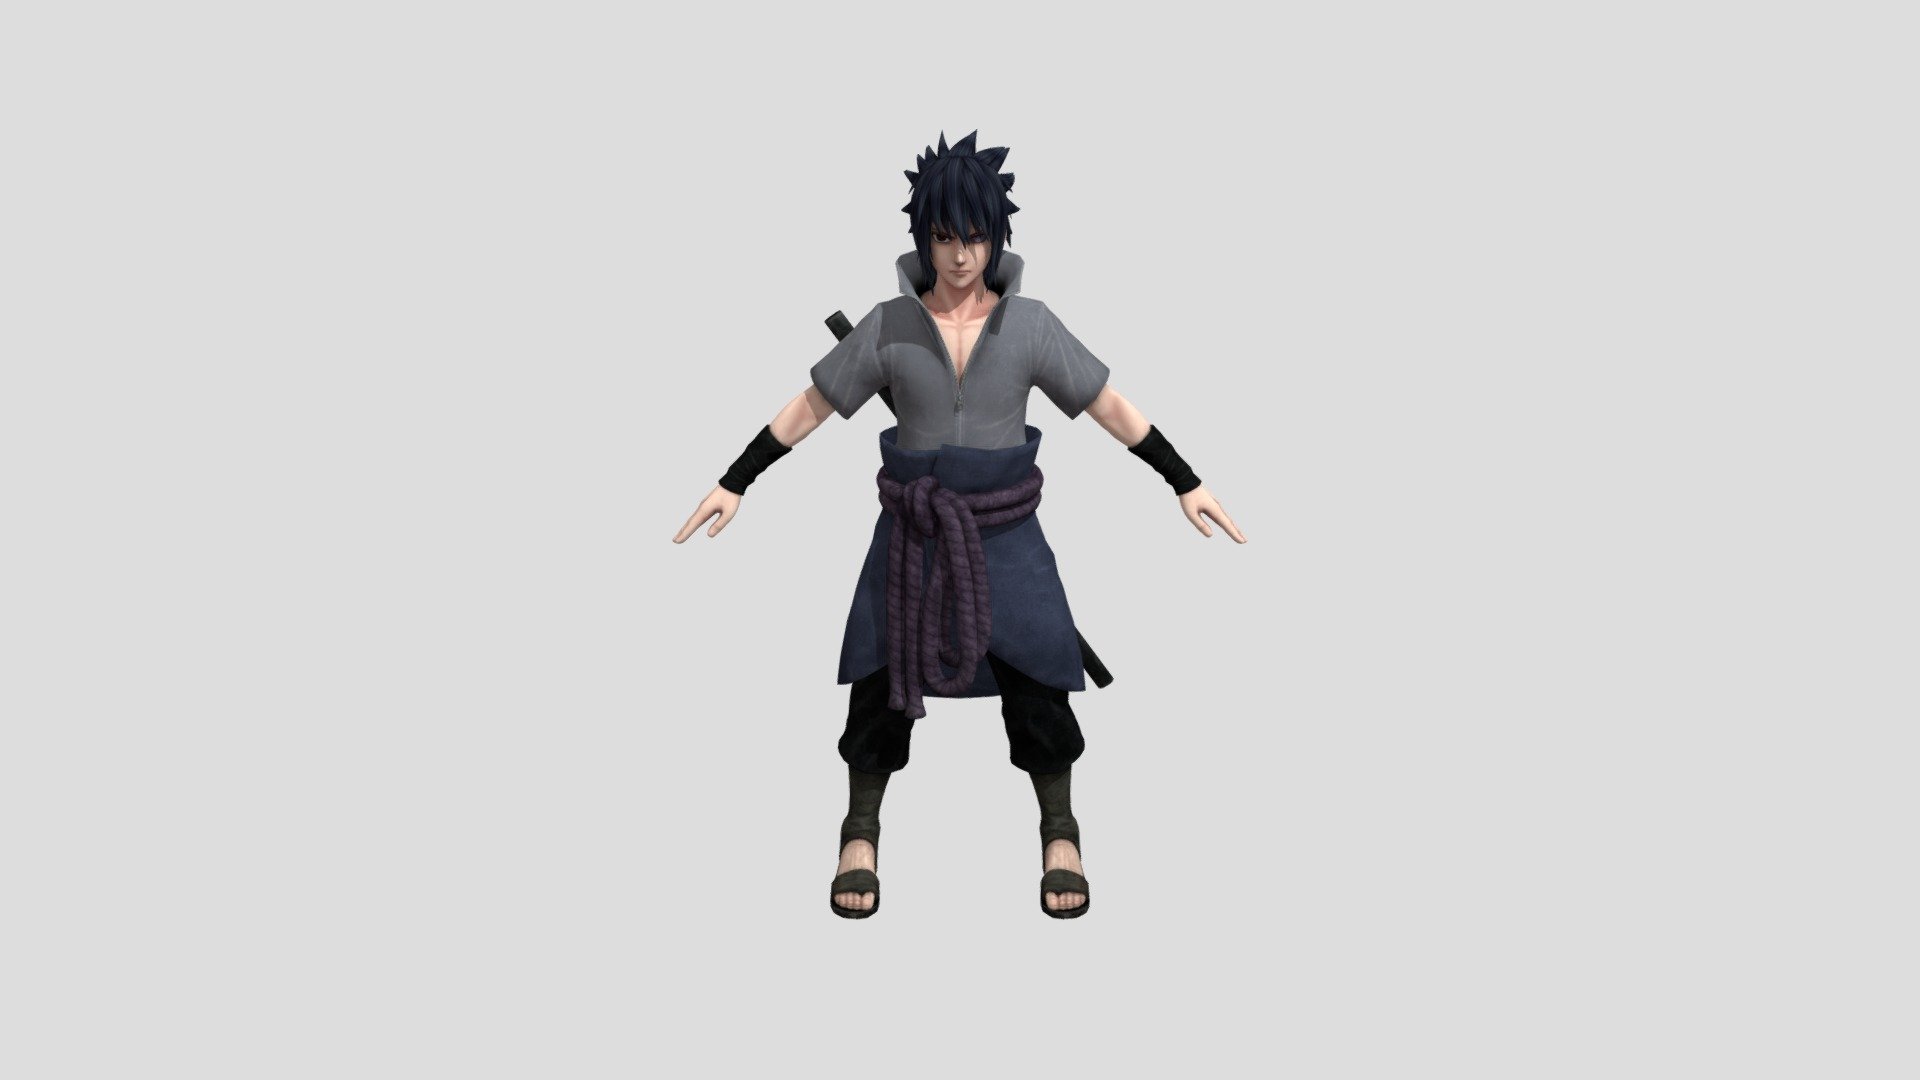 Sasuke jump force - 3D model by gabrieel22 3d model